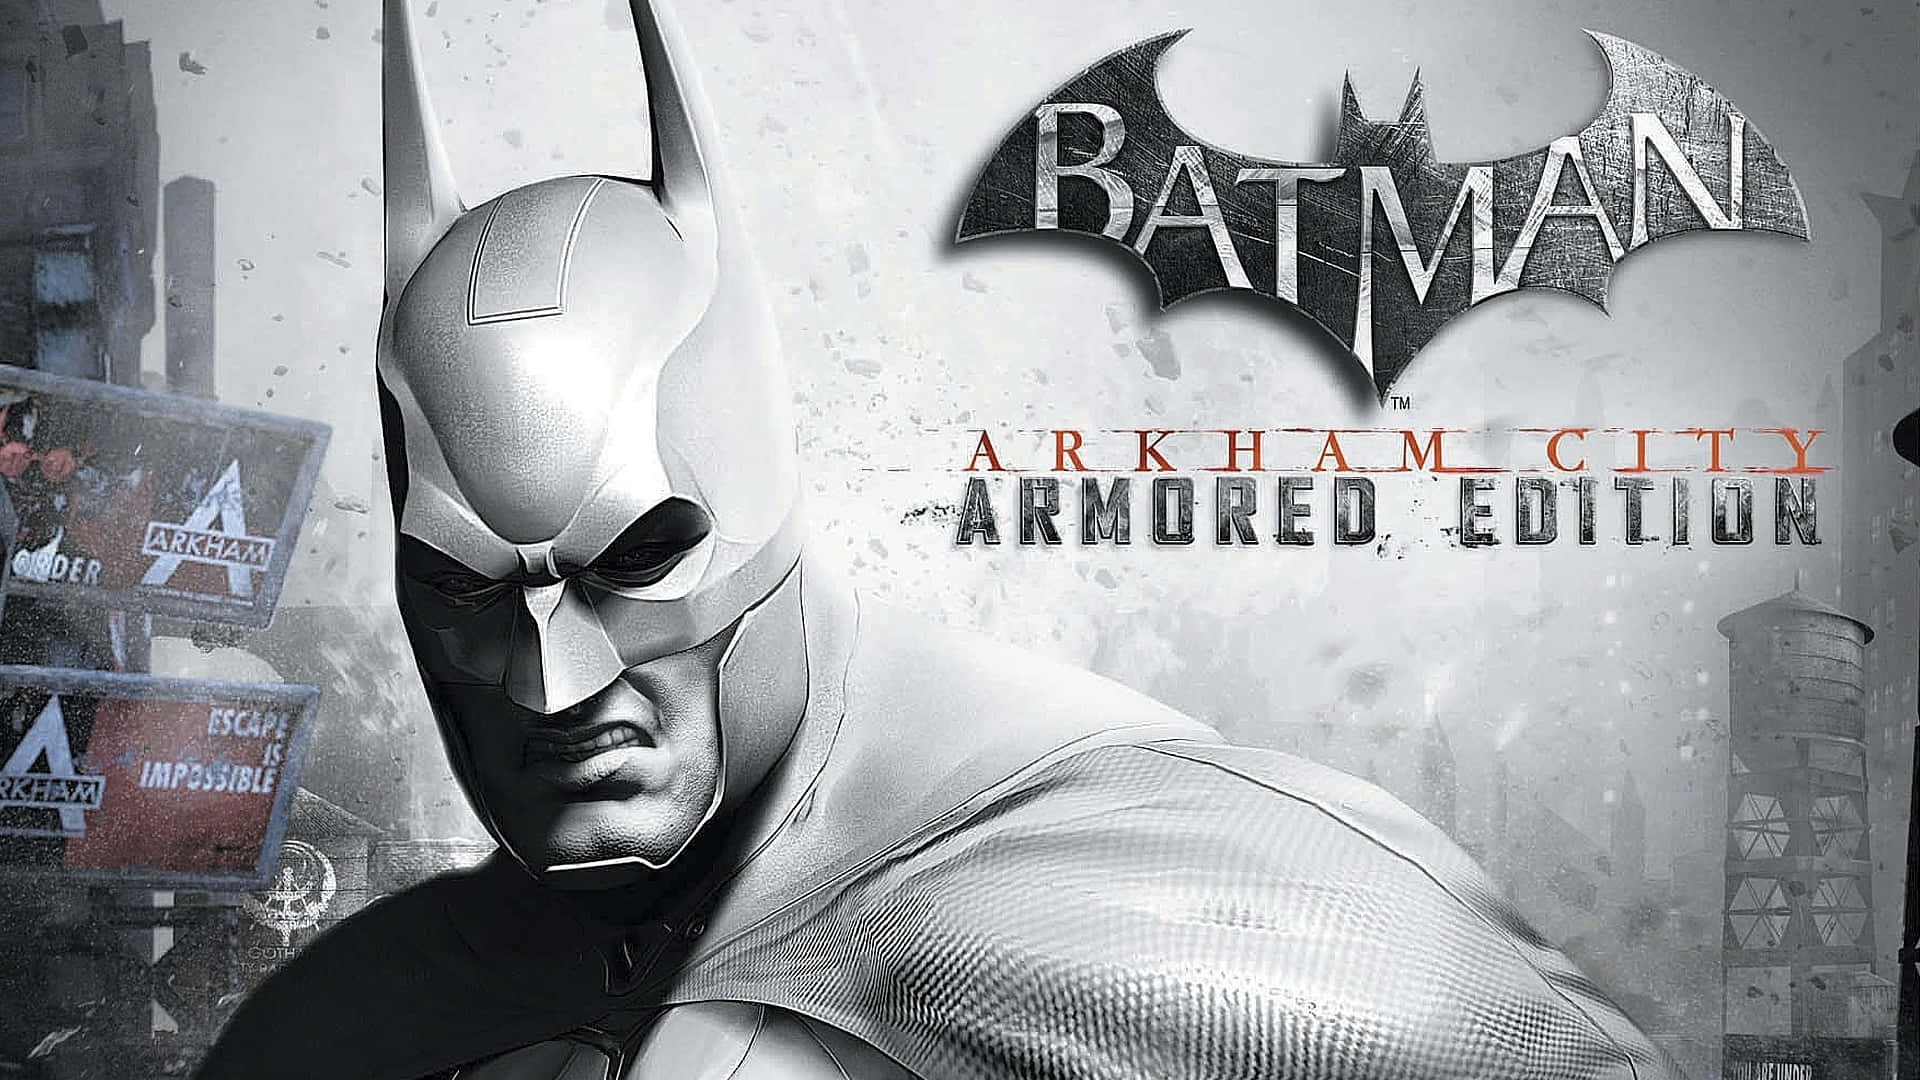 Batman faces a dangerous enemy in Arkham City